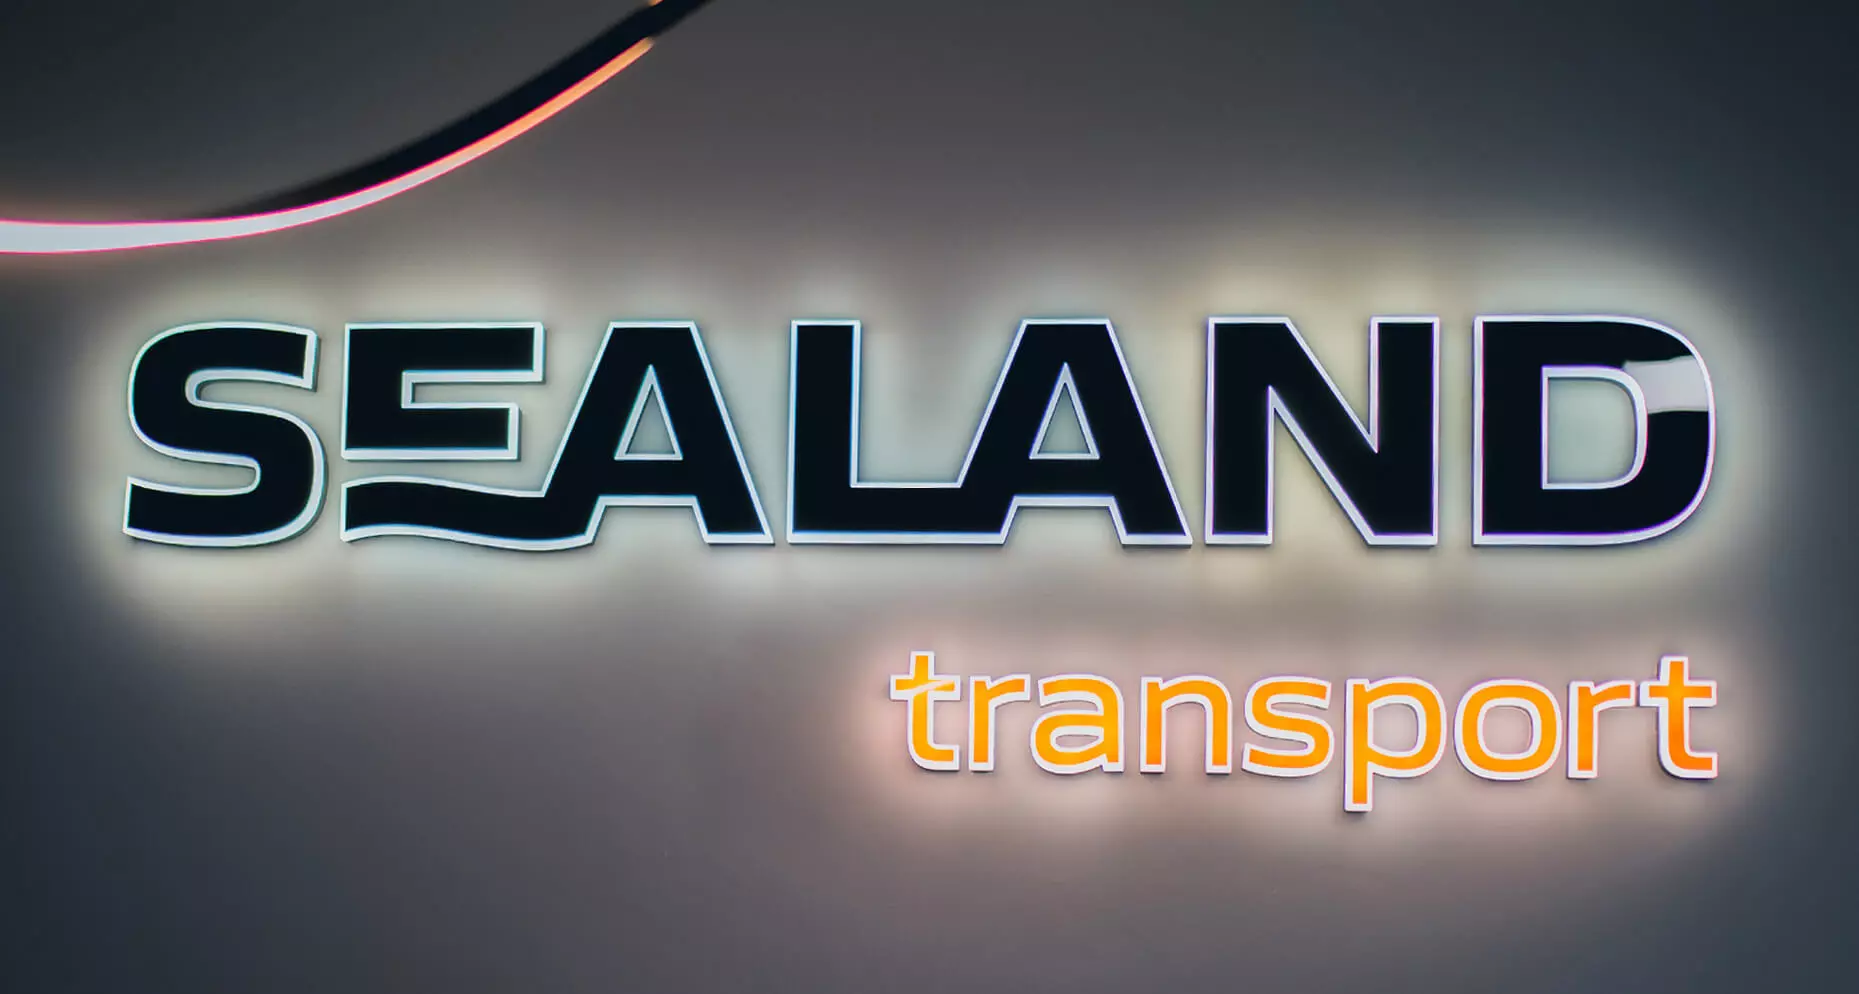 Sealand transport - LED side-lit letters